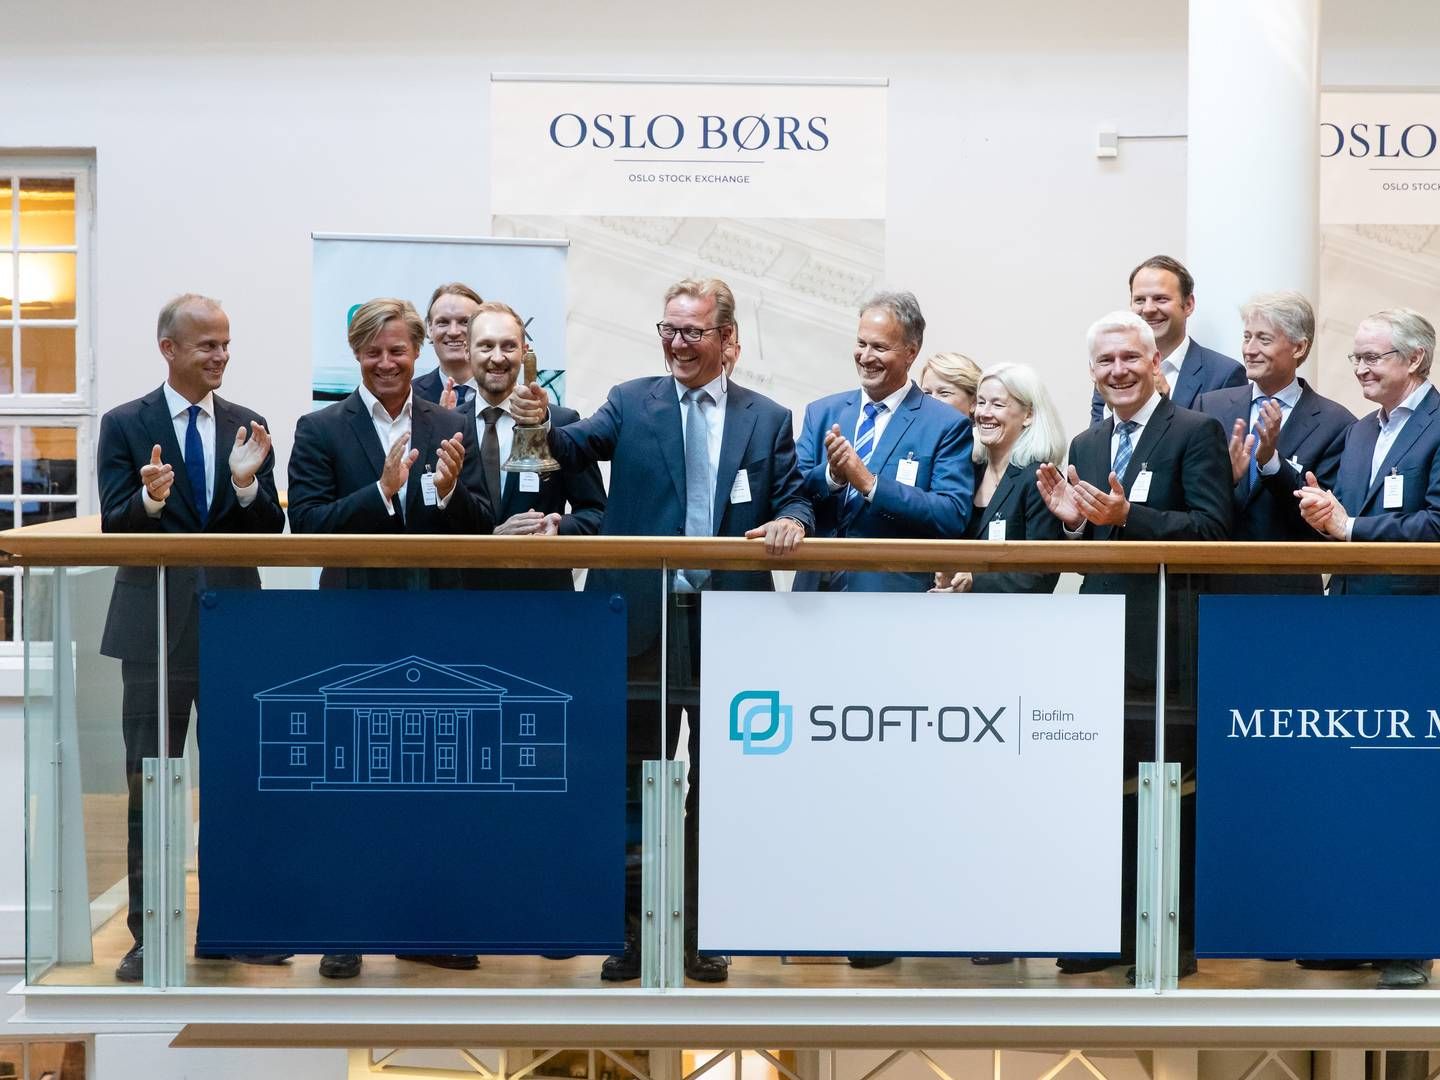 Der var højt humør under noteringen af norske Softox, men selskabet fyrer nu alle danske medarbejdere som følge af finansieringsproblemer. | Photo: Audun Braastad / NTB